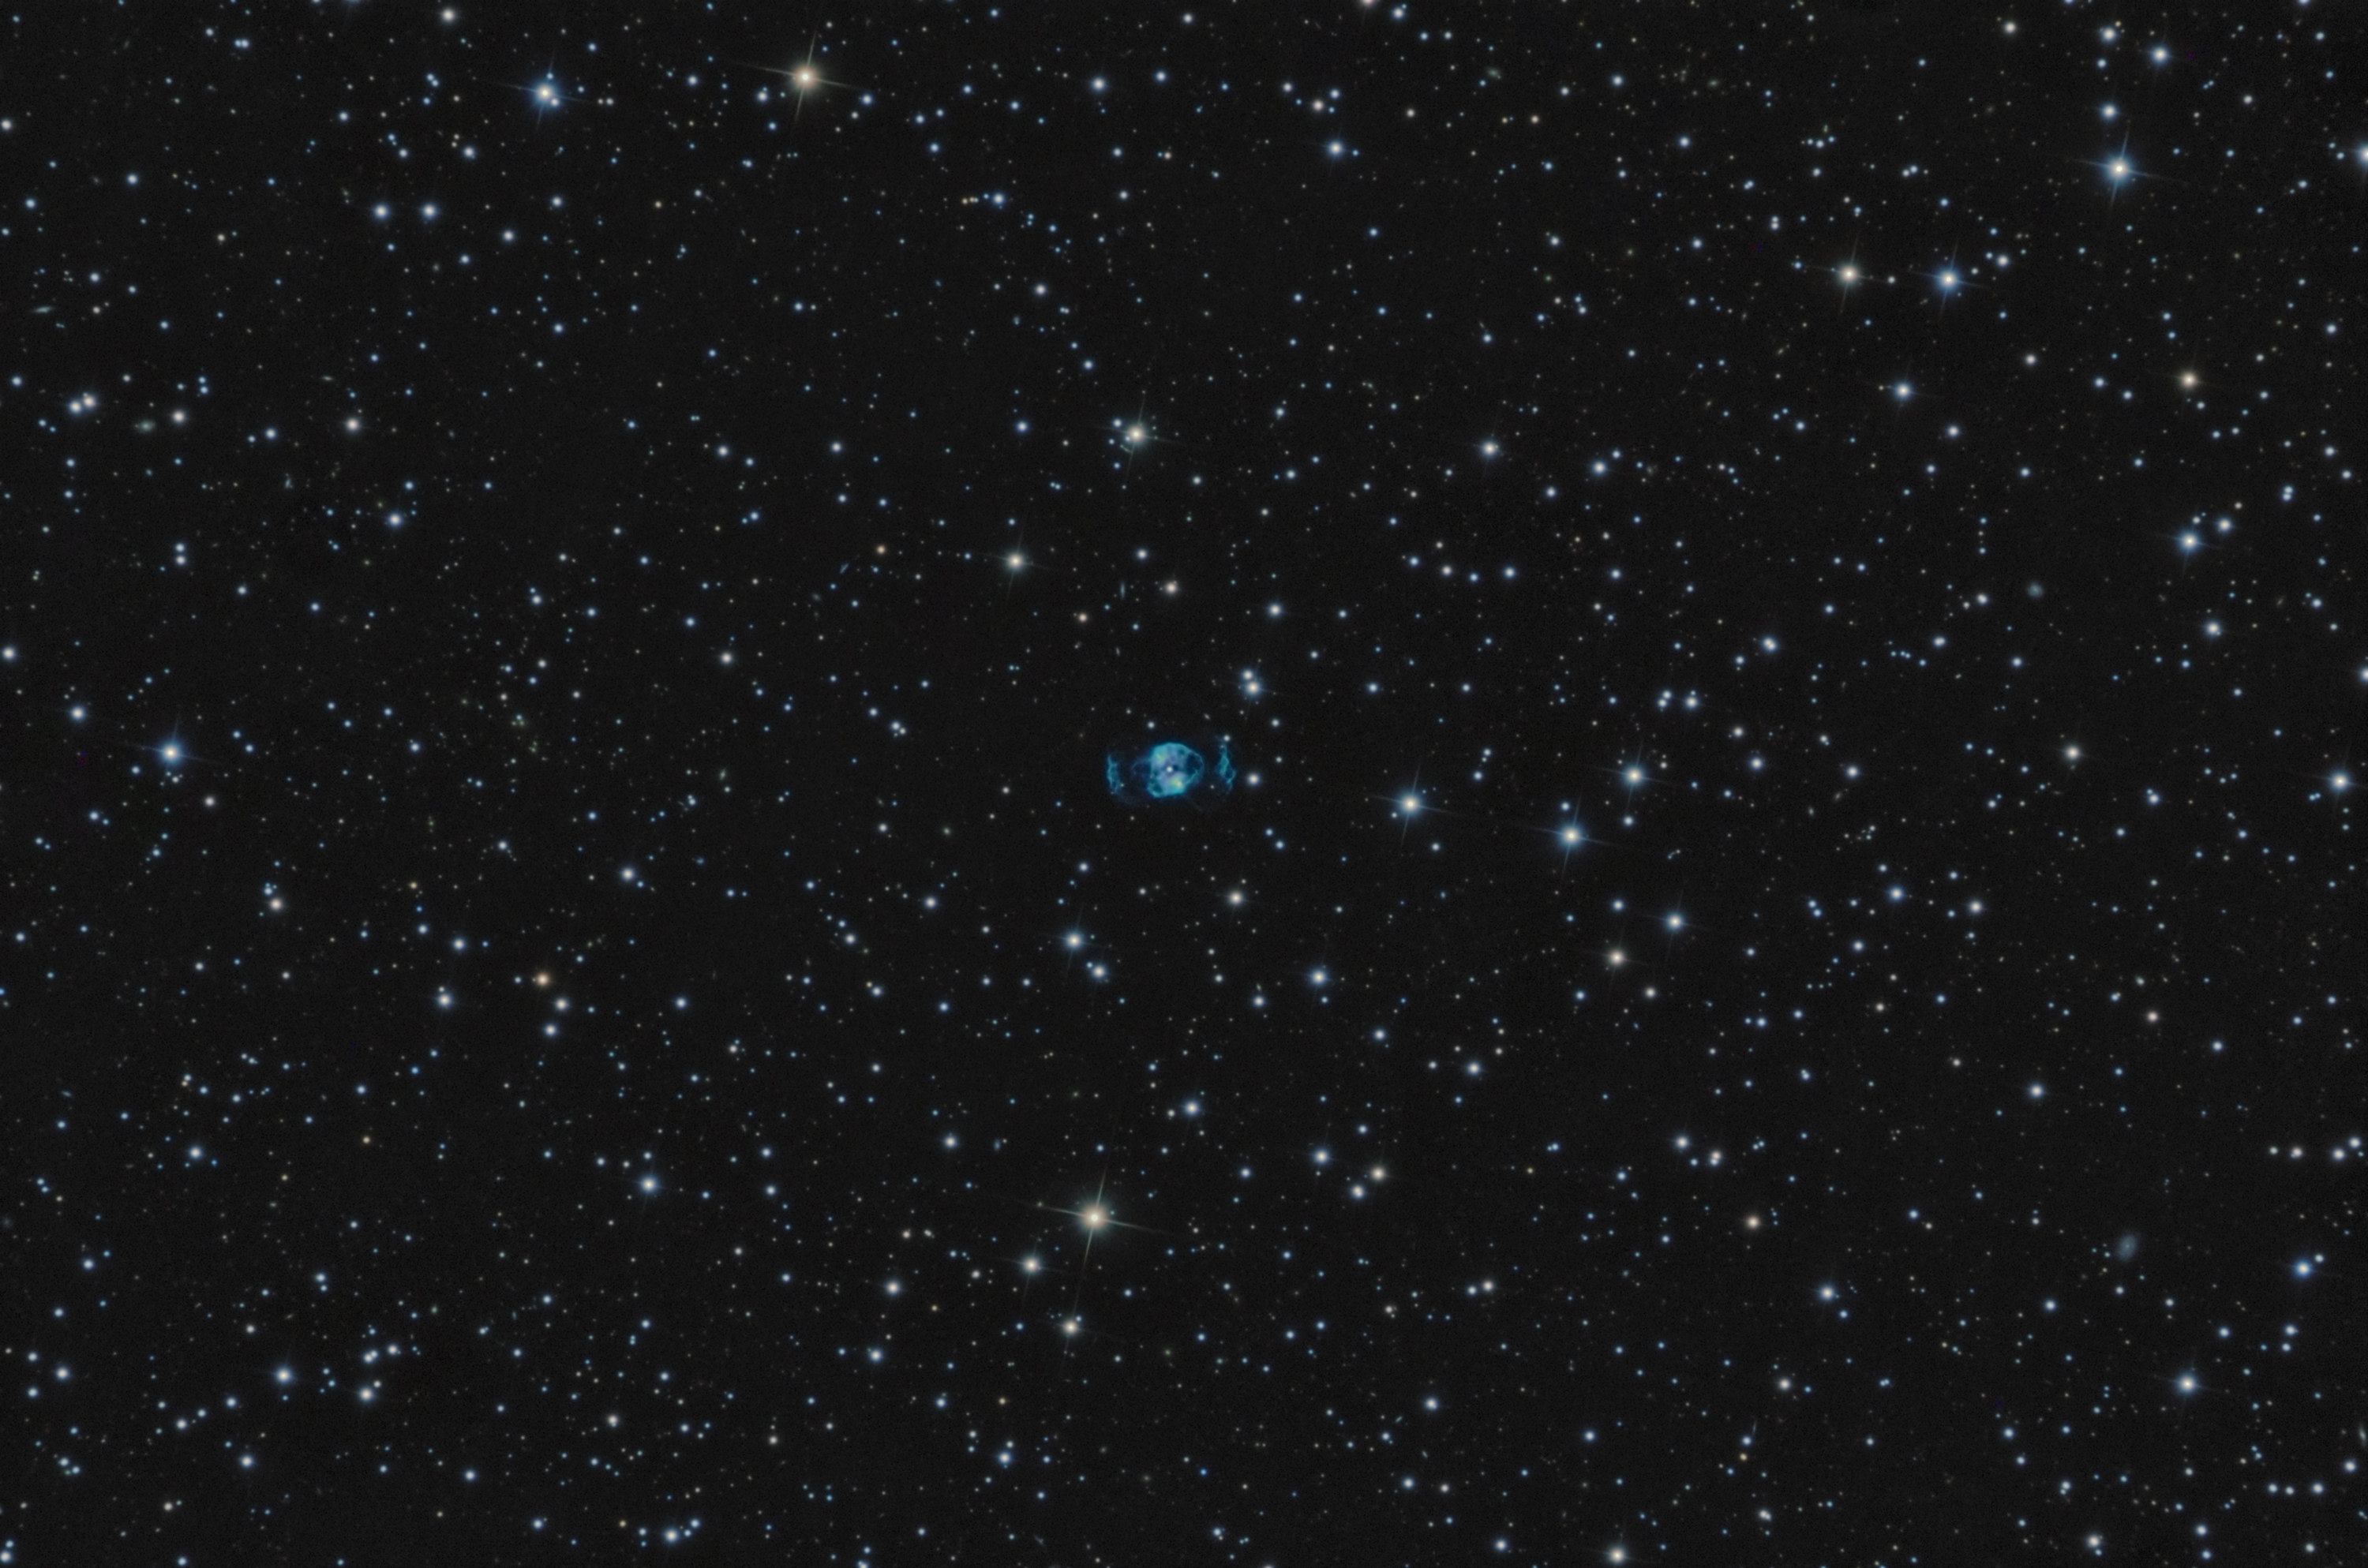 Double Bubble Nebula (NGC2371-2)